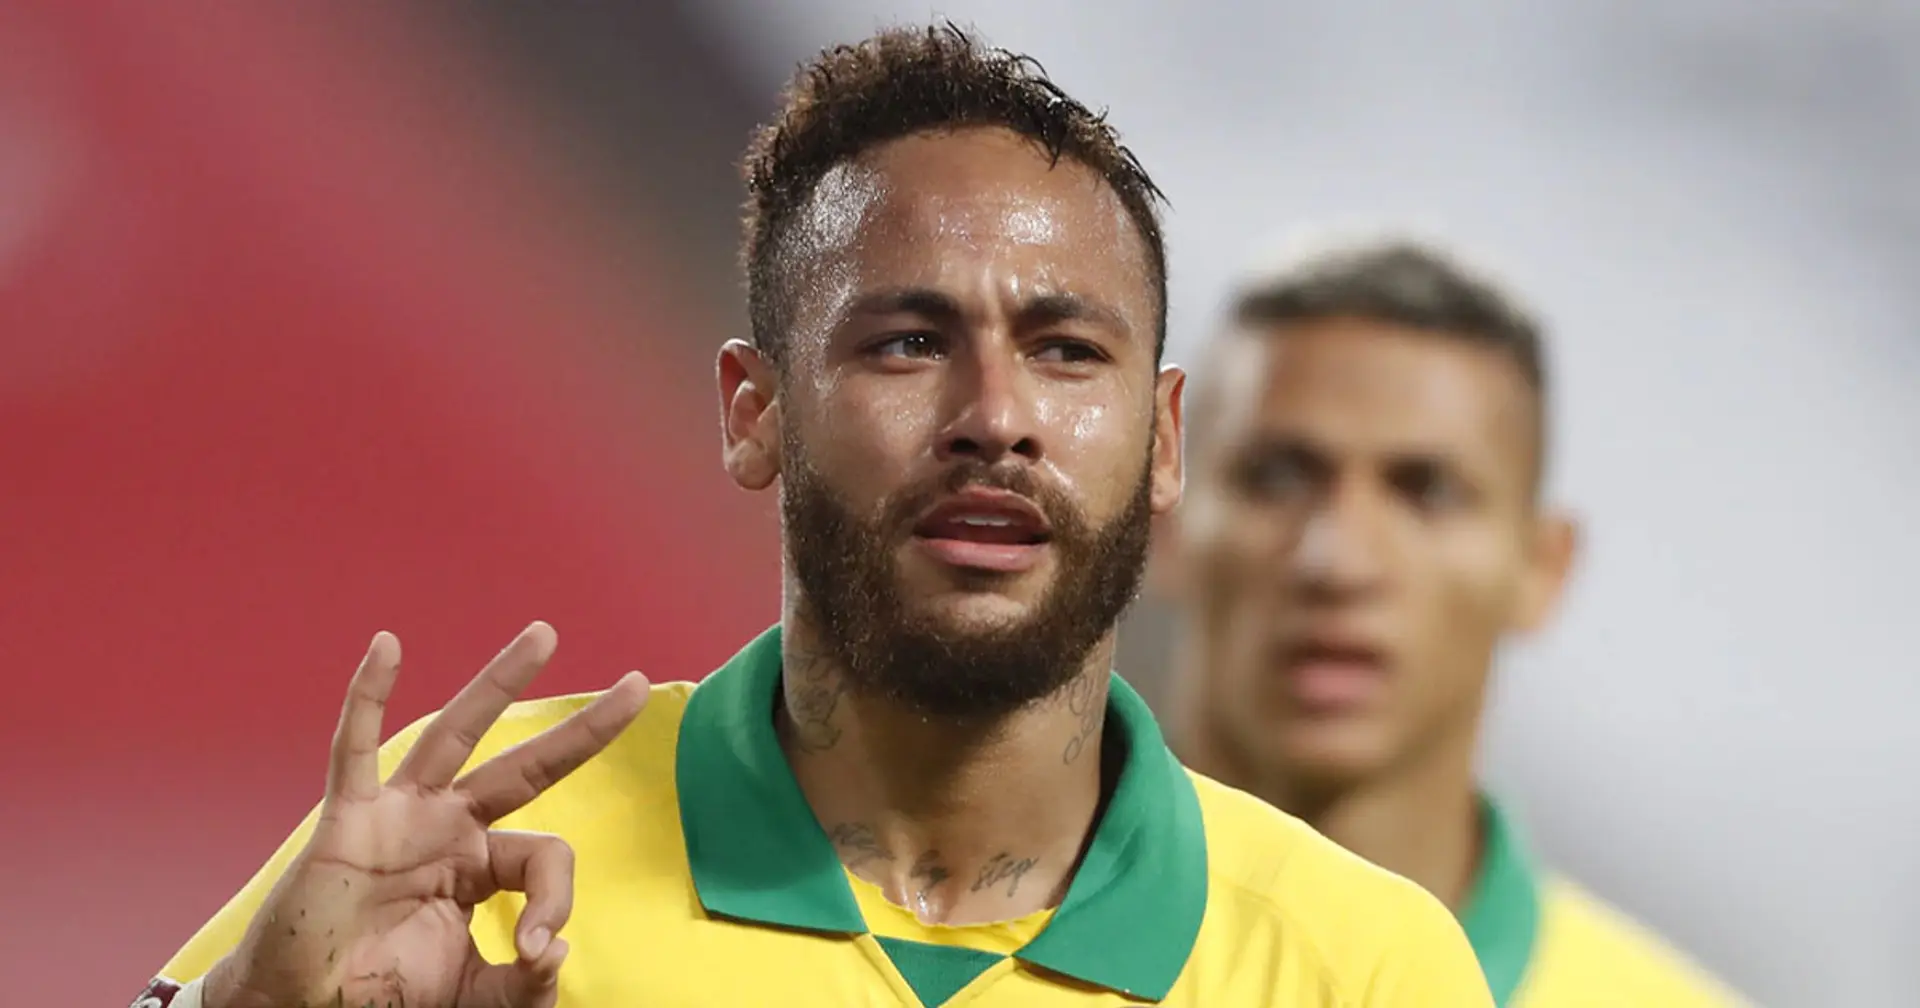 Le Parisienne| Neymar sempre più lontano dal PSG: ha già avvisato gli amici